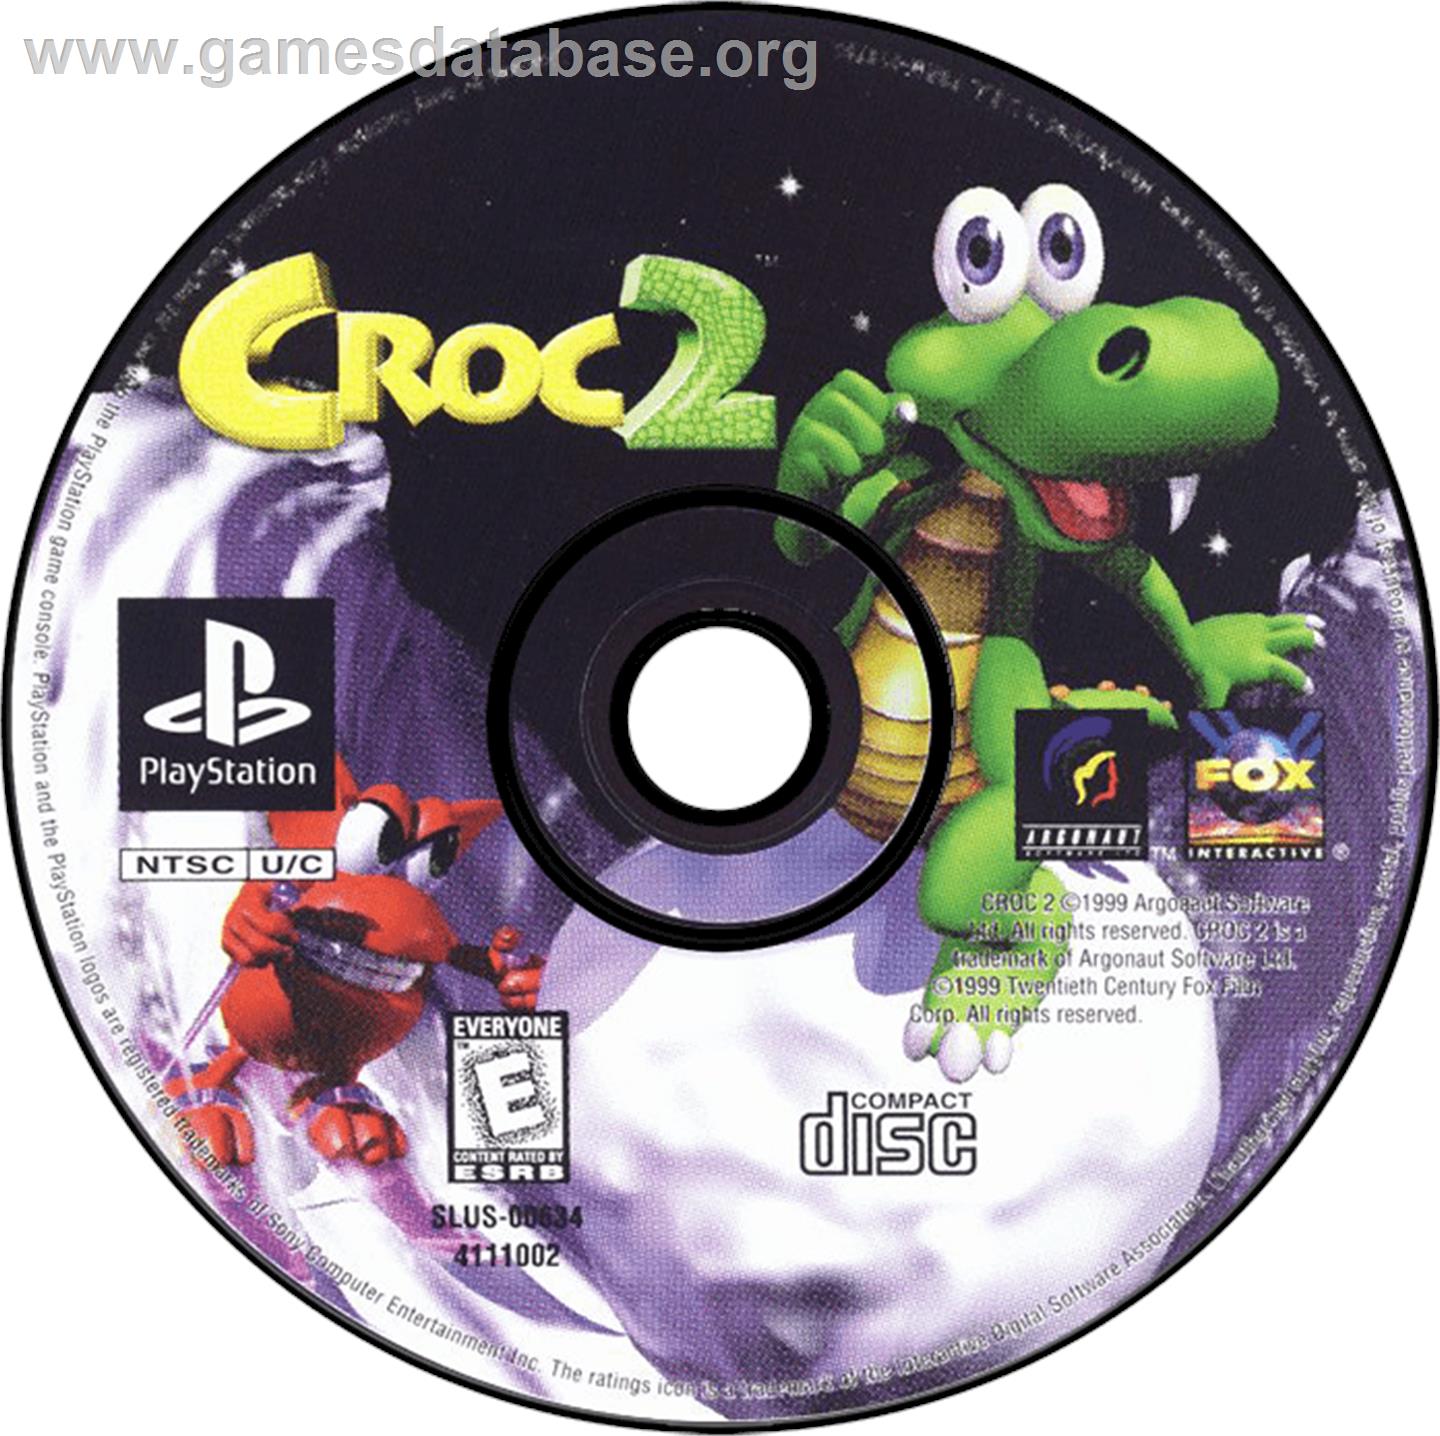 Croc 2 - Sony Playstation - Artwork - Disc